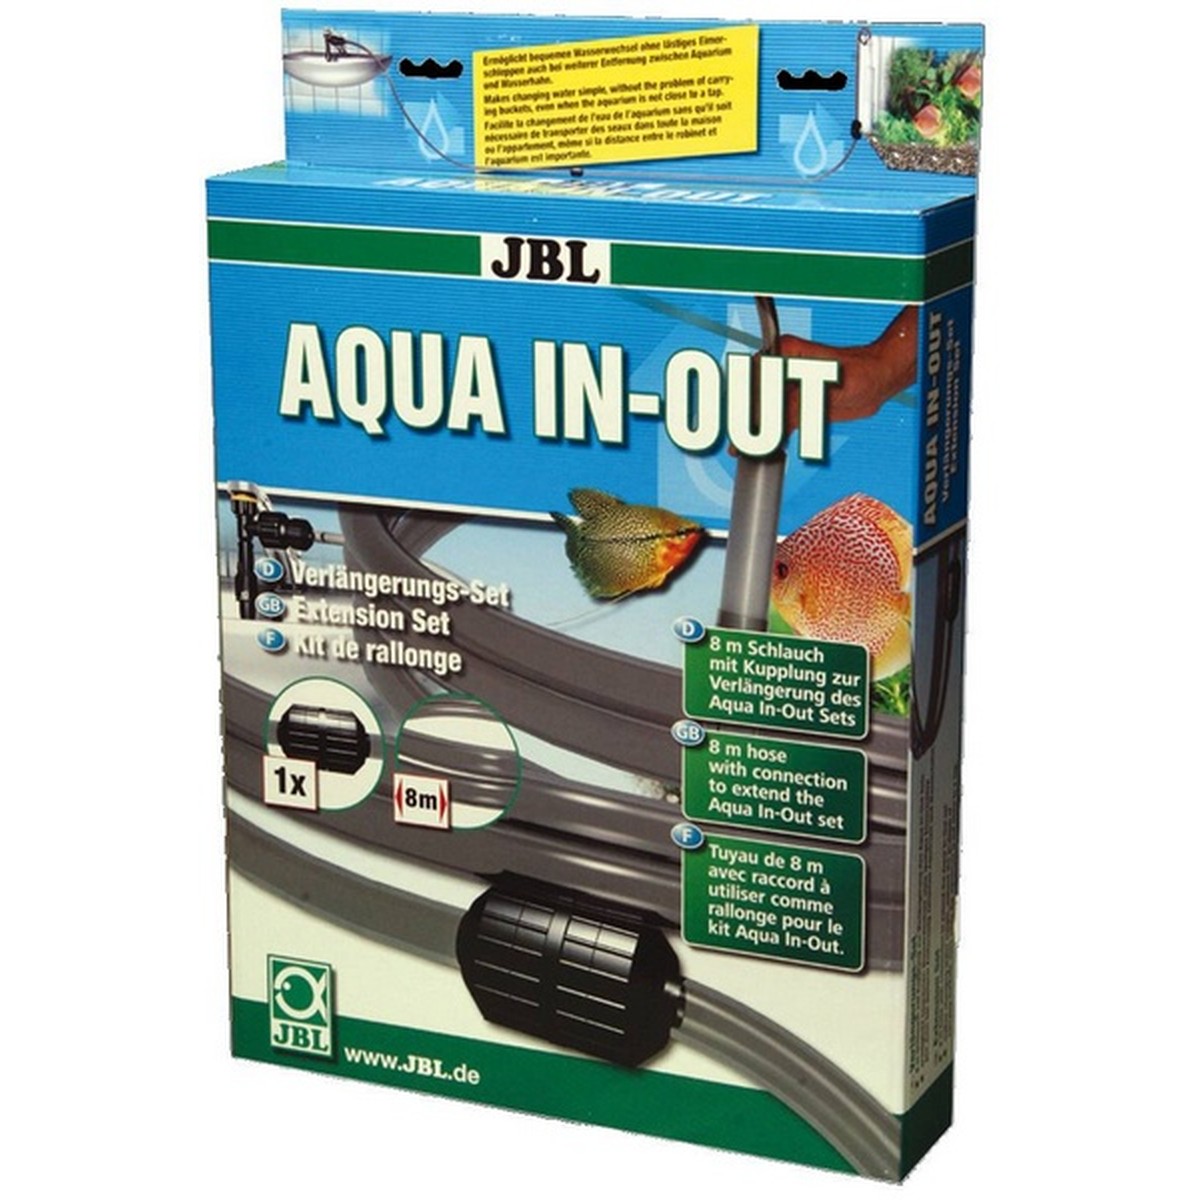   JBL Aqua In-Out . set de rallonge  